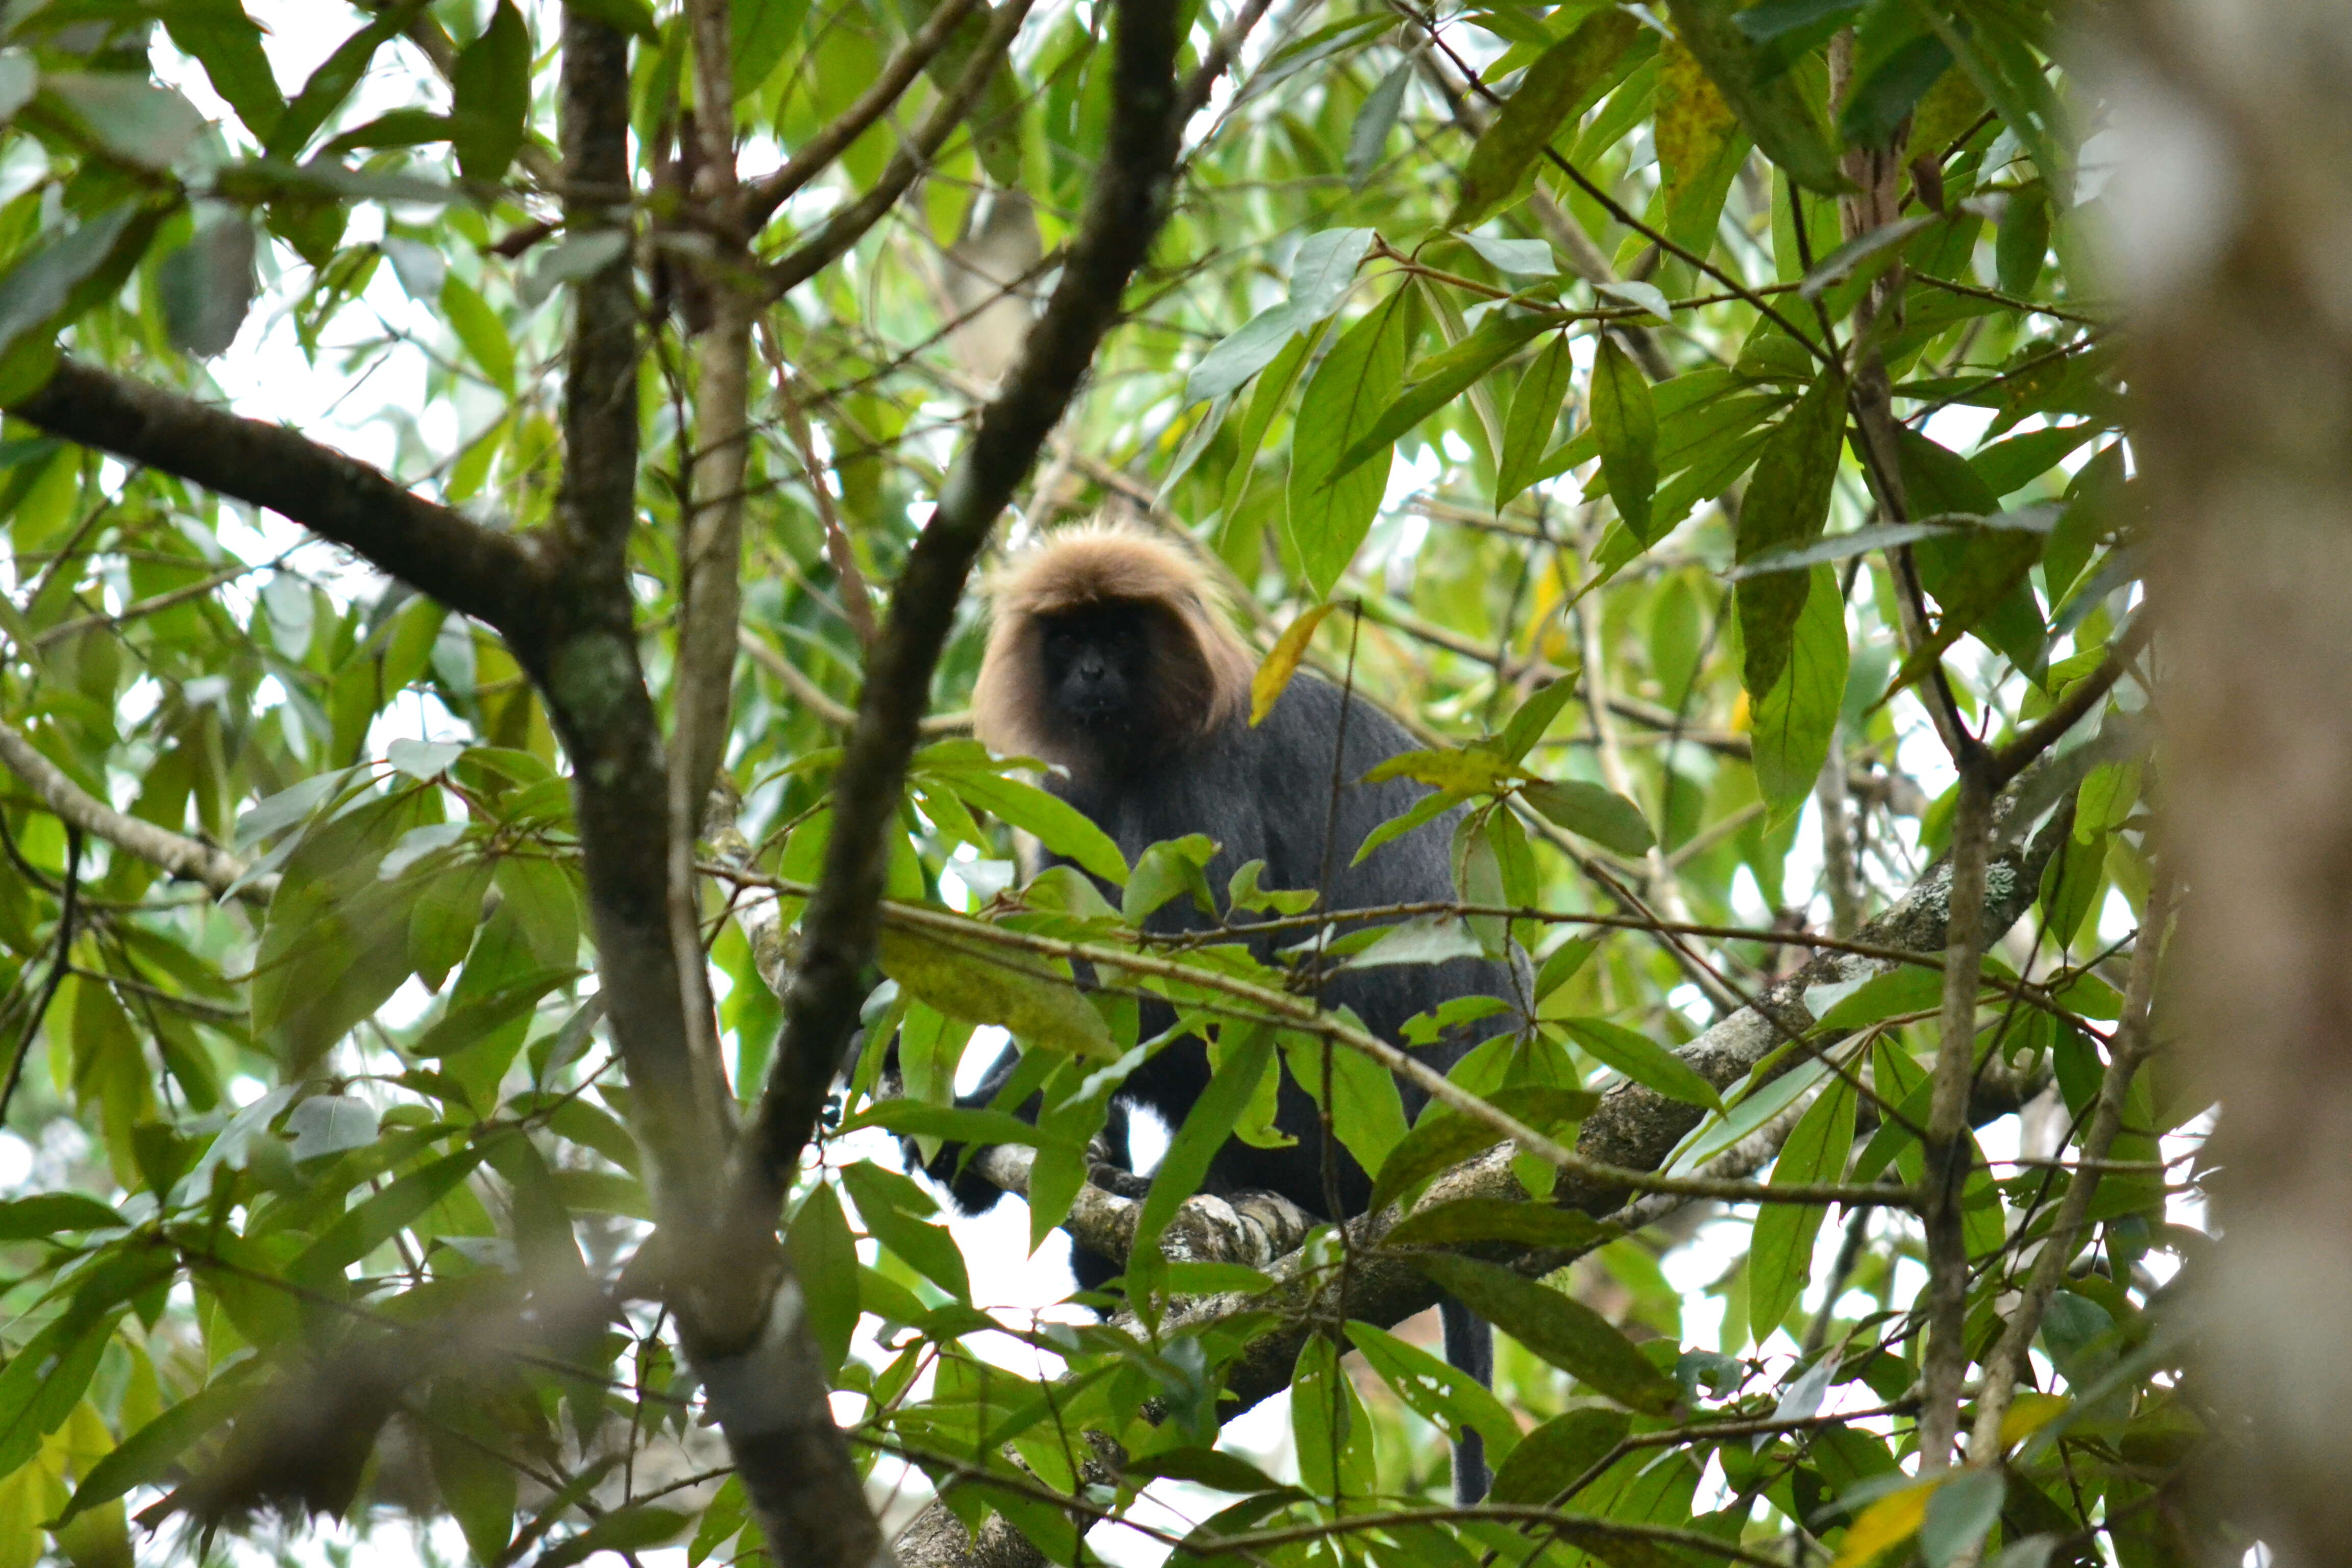 Image of Black Leaf Monkey